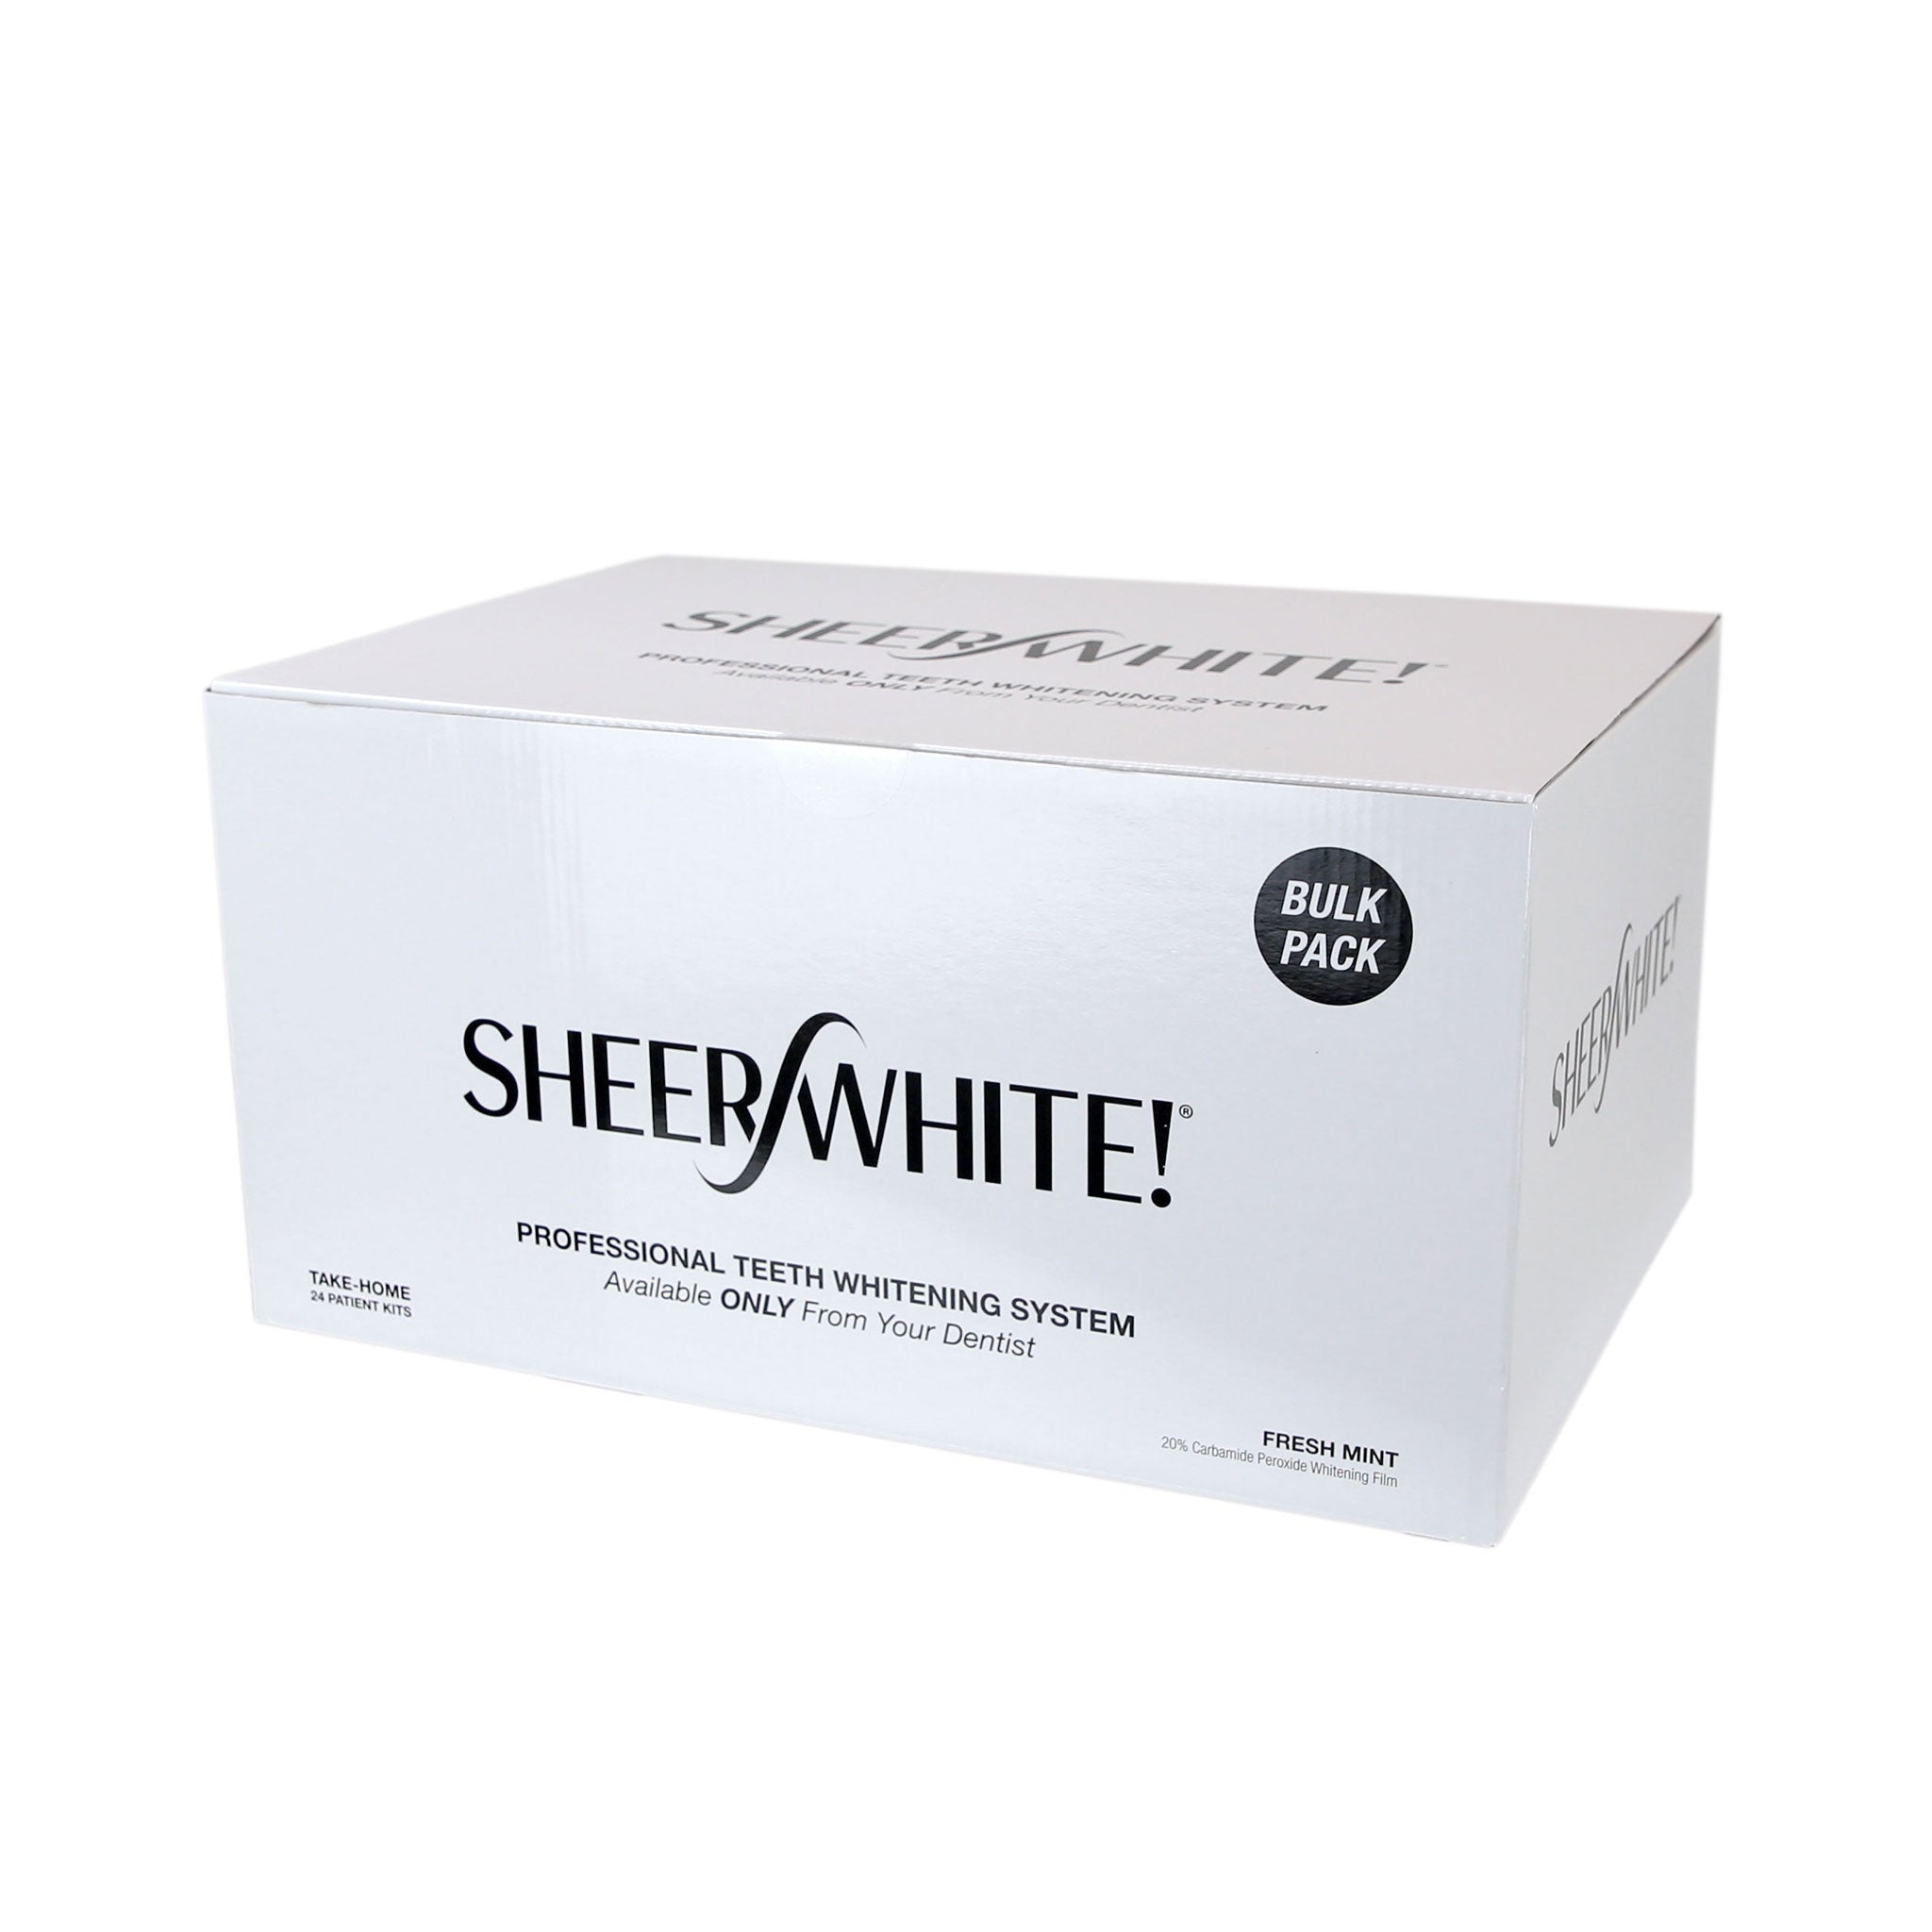 Sheer White! Take-Home Whitening